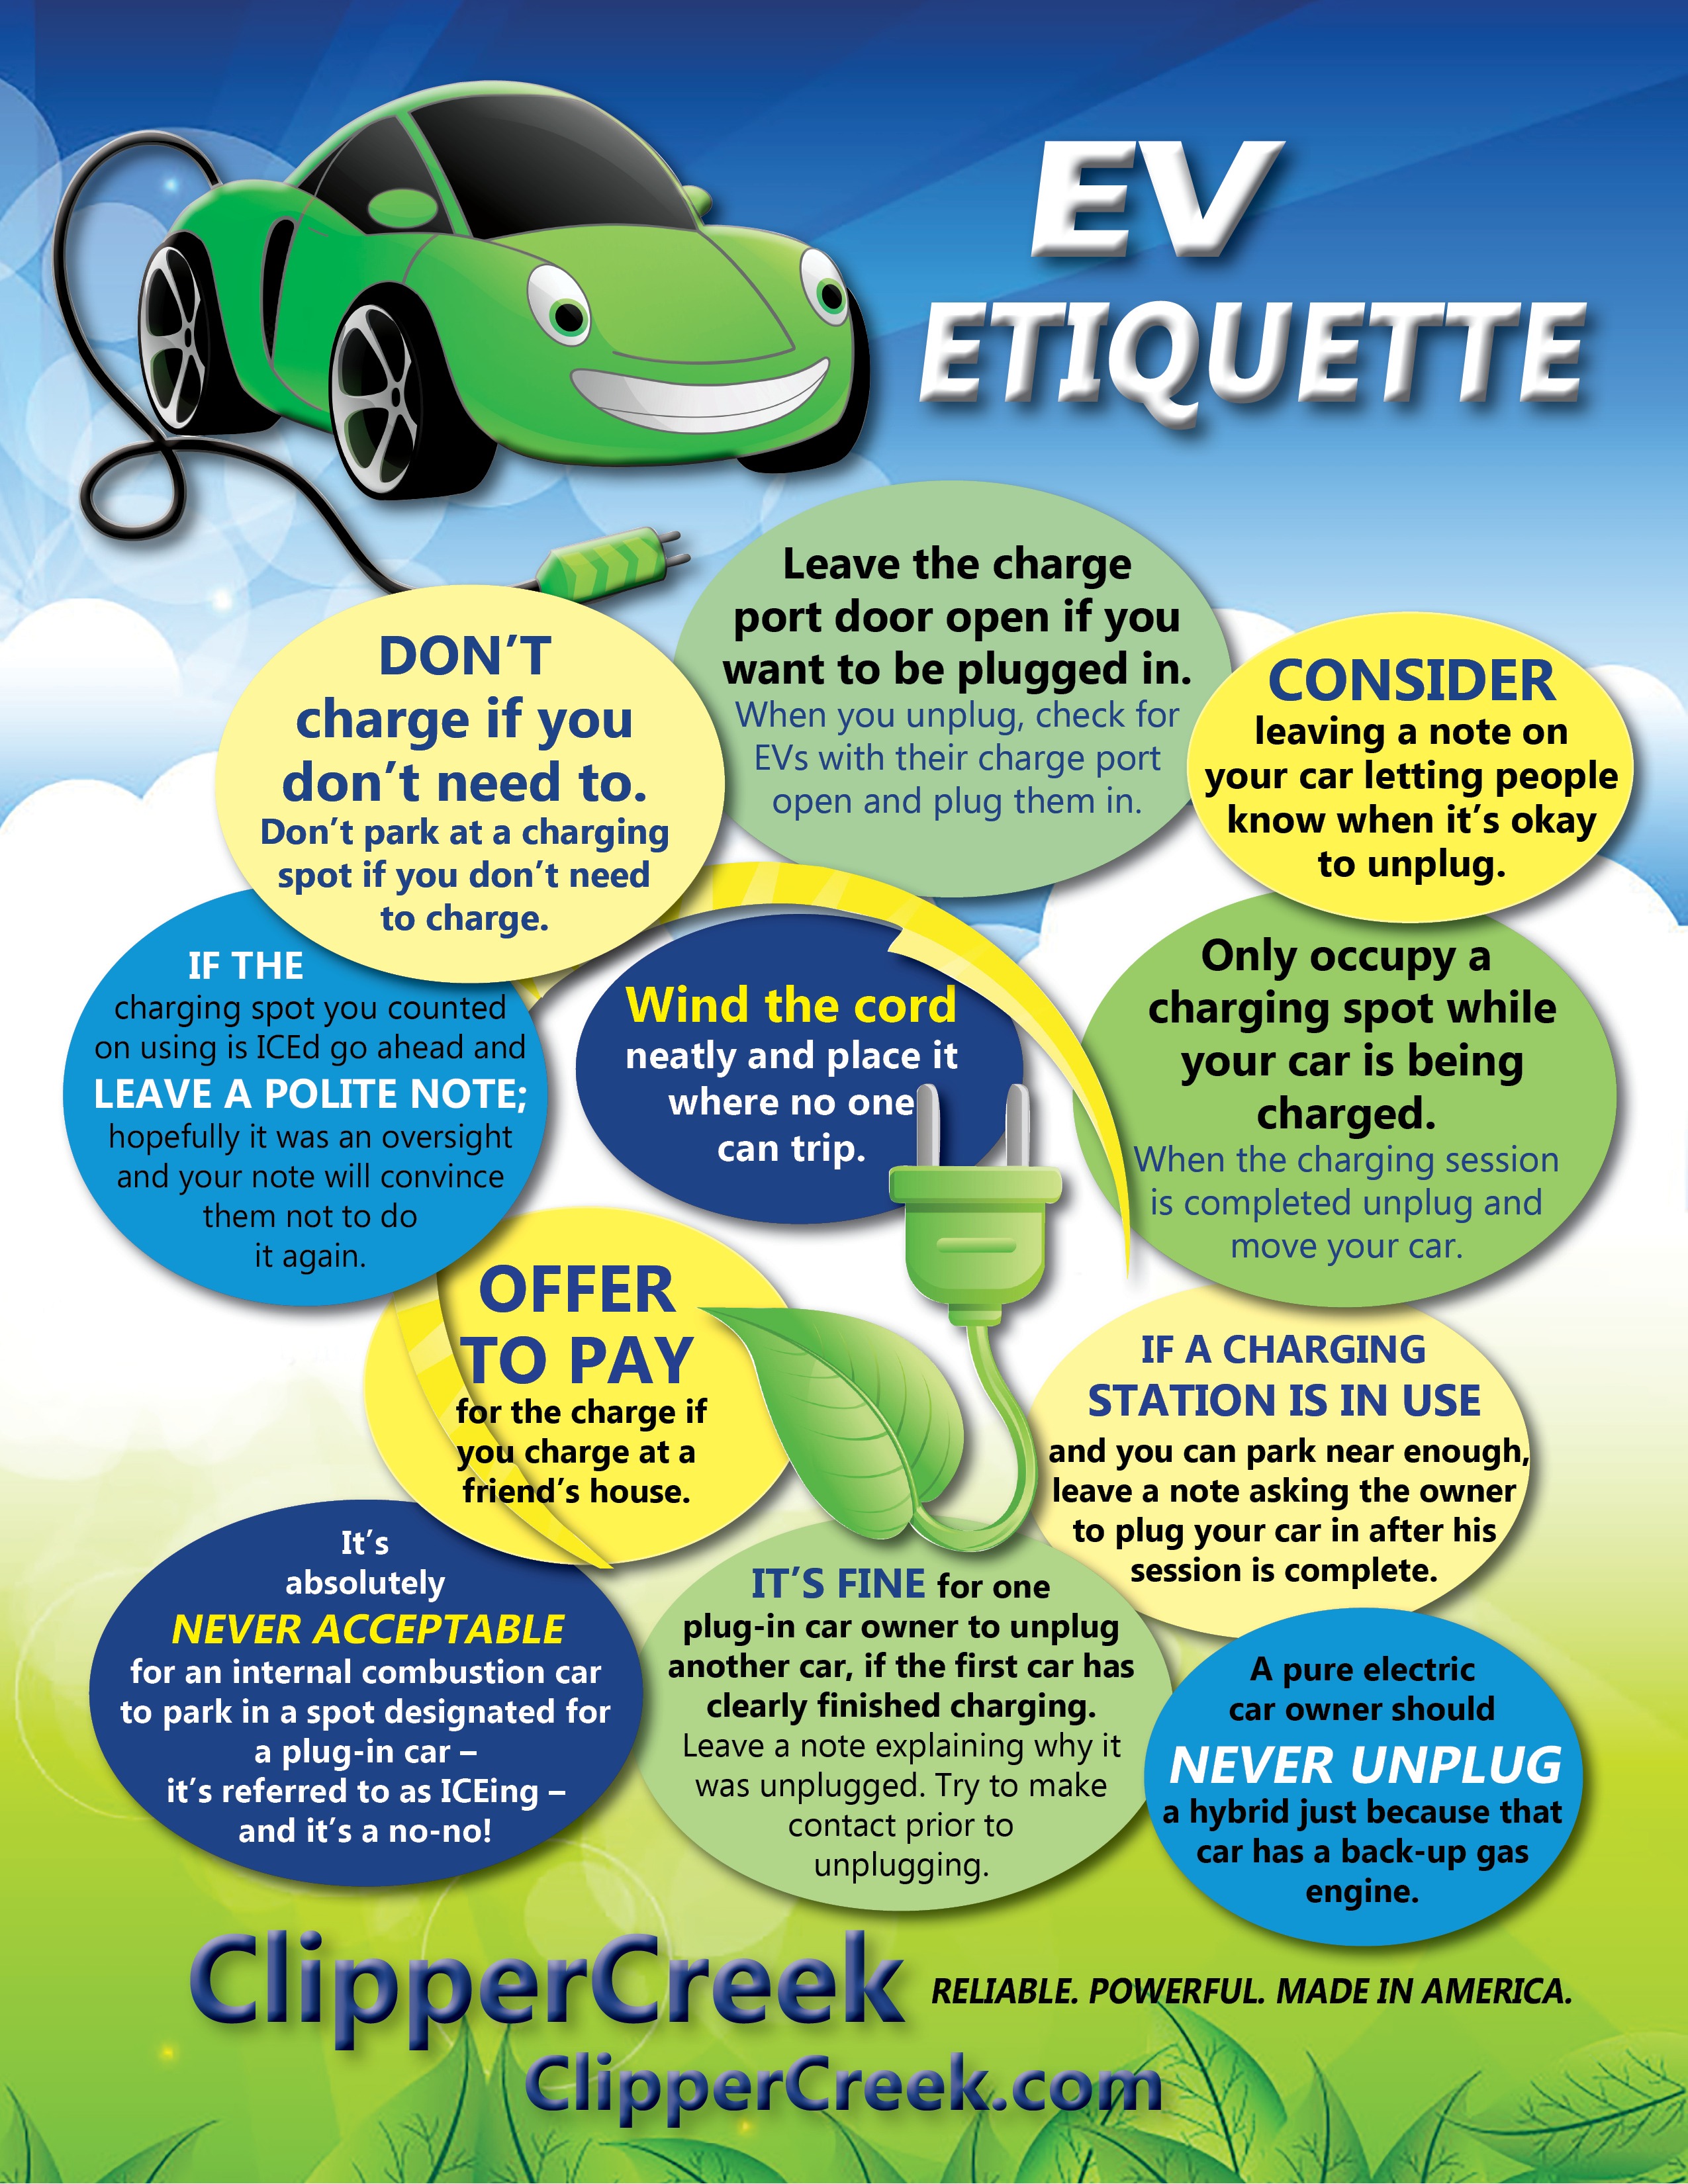 EV Etiquette, Electric Vehicle Etiquette from ClipperCreek